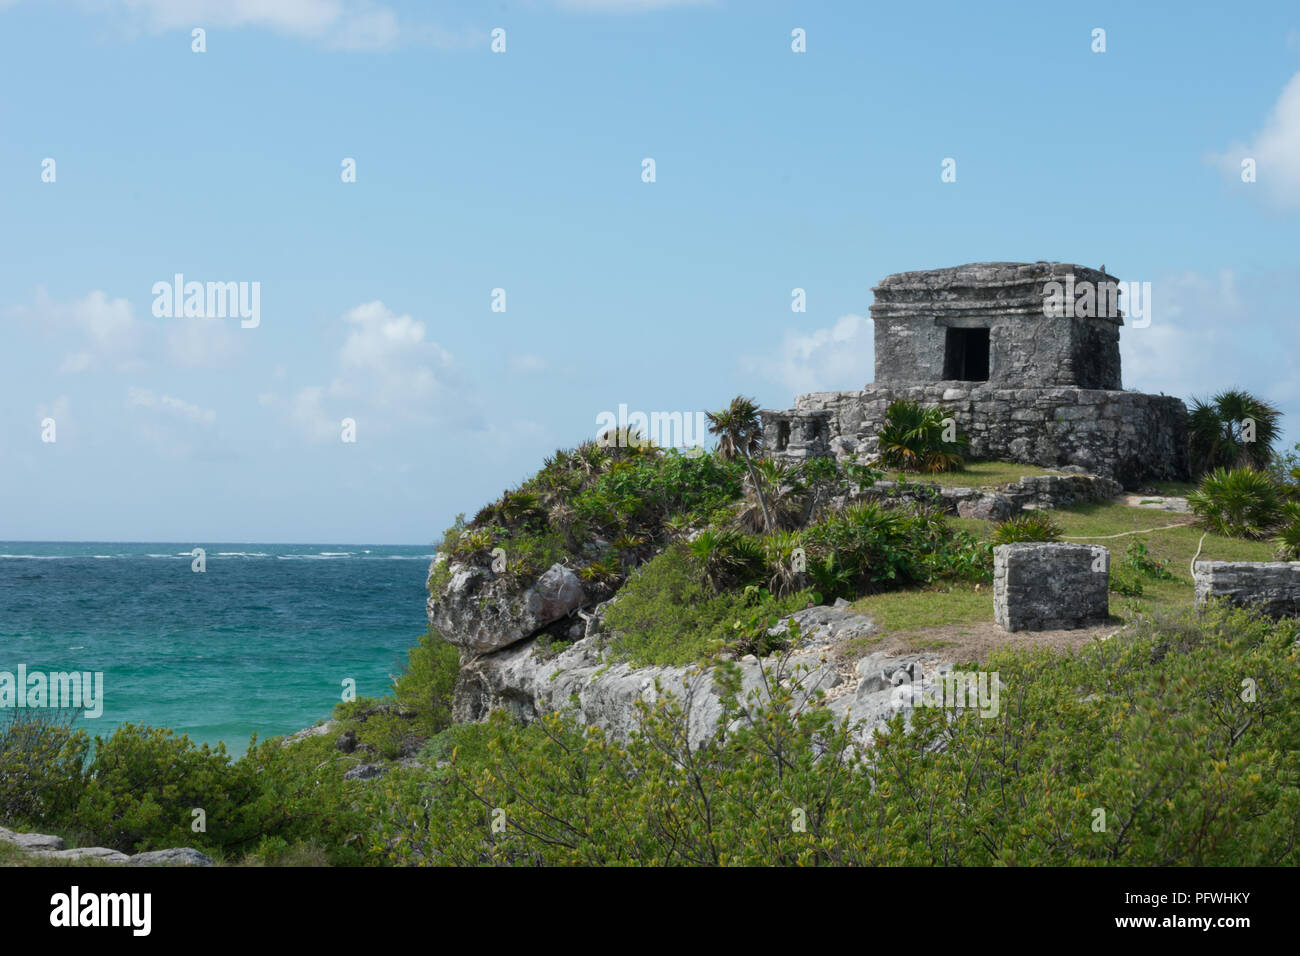 Tulum Ruins, quintana roo, yucatan, mexico Stock Photo